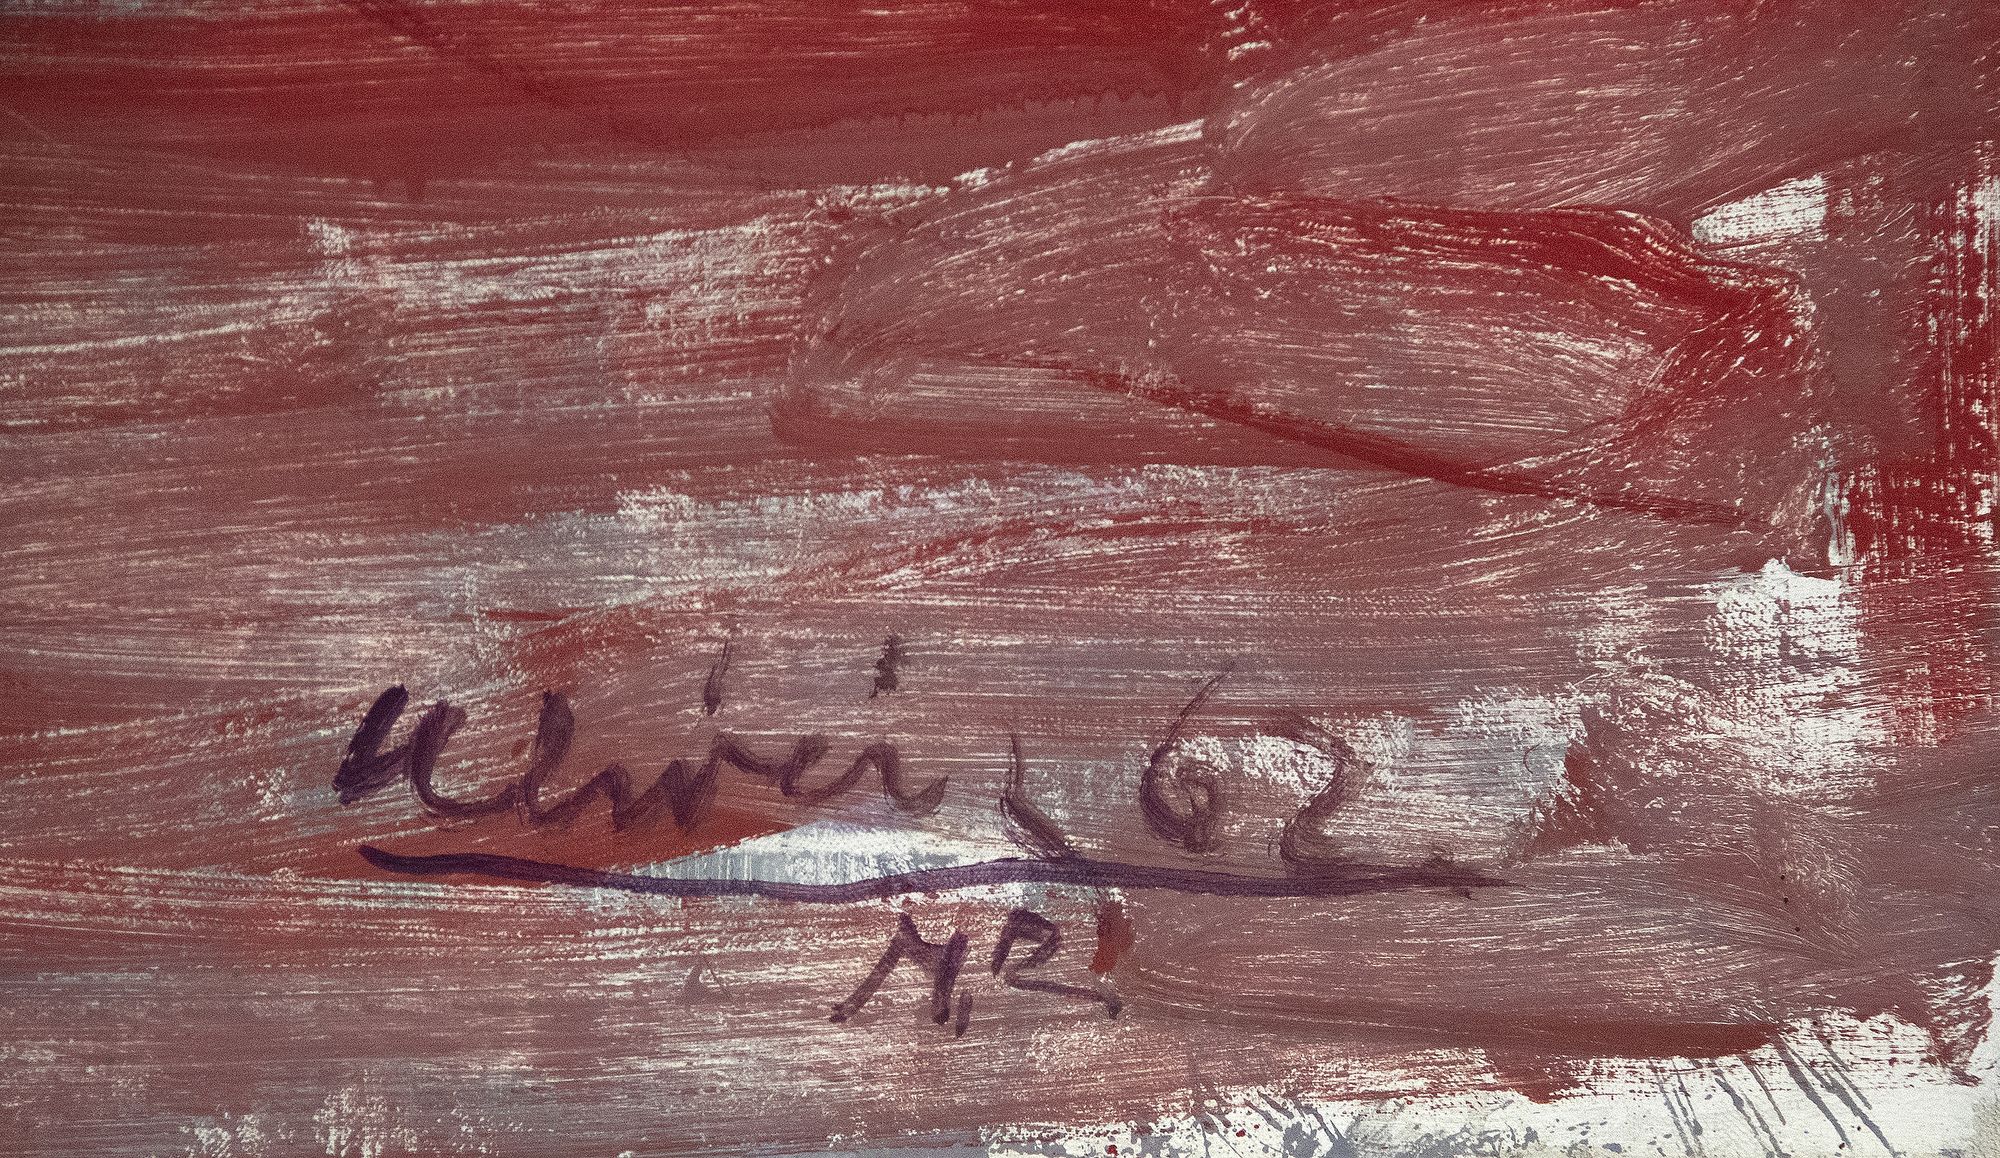 内森-奥利维拉经常与加利福尼亚湾区的具象画家联系在一起，但实际上，他的作品透露出他对威廉-德库宁、阿尔贝托-贾科梅蒂和弗朗西斯-培根的兴趣。这些影响是《从地毯上走下来的裸体》的显著特点。这幅画是奥利维拉 30 岁出头时画的，正是这种画奠定了他早期的声誉，他以即兴的风格描绘了令人魂牵梦萦的孤立人物。奥利维拉晚期的作品反映了德库宁关于绘画视觉记忆的挑战和创造具有微弱存在感的人物形象的有影响力的评论，然而，强烈的地平线为这幅风景画奠定了基础，使人物形象比往常更有肉体存在感。